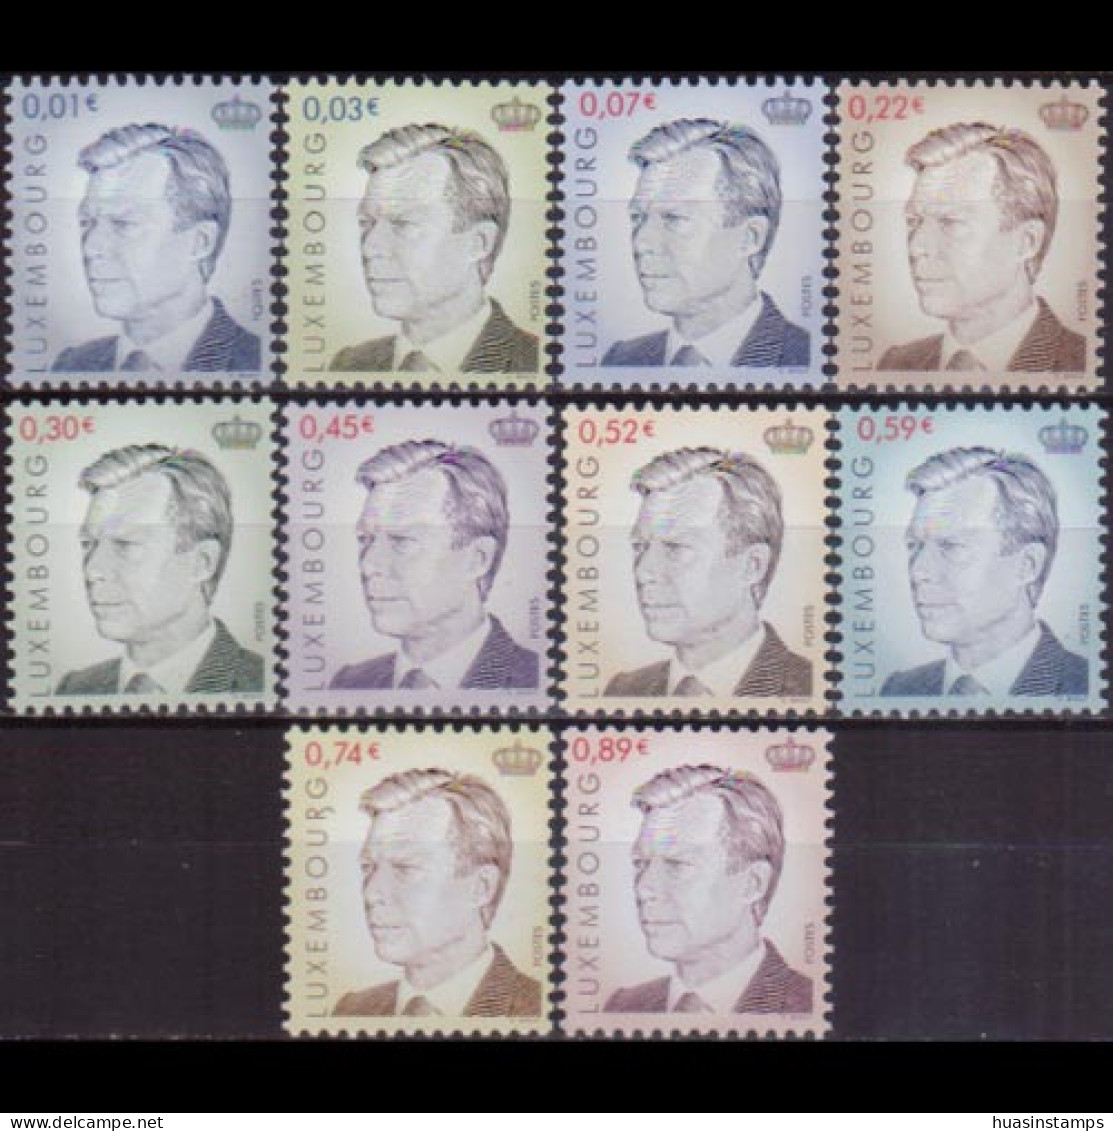 LUXEMBOURG 2001 - #1072-81 Grand Duke Henri Set Of 10 MNH - Nuovi